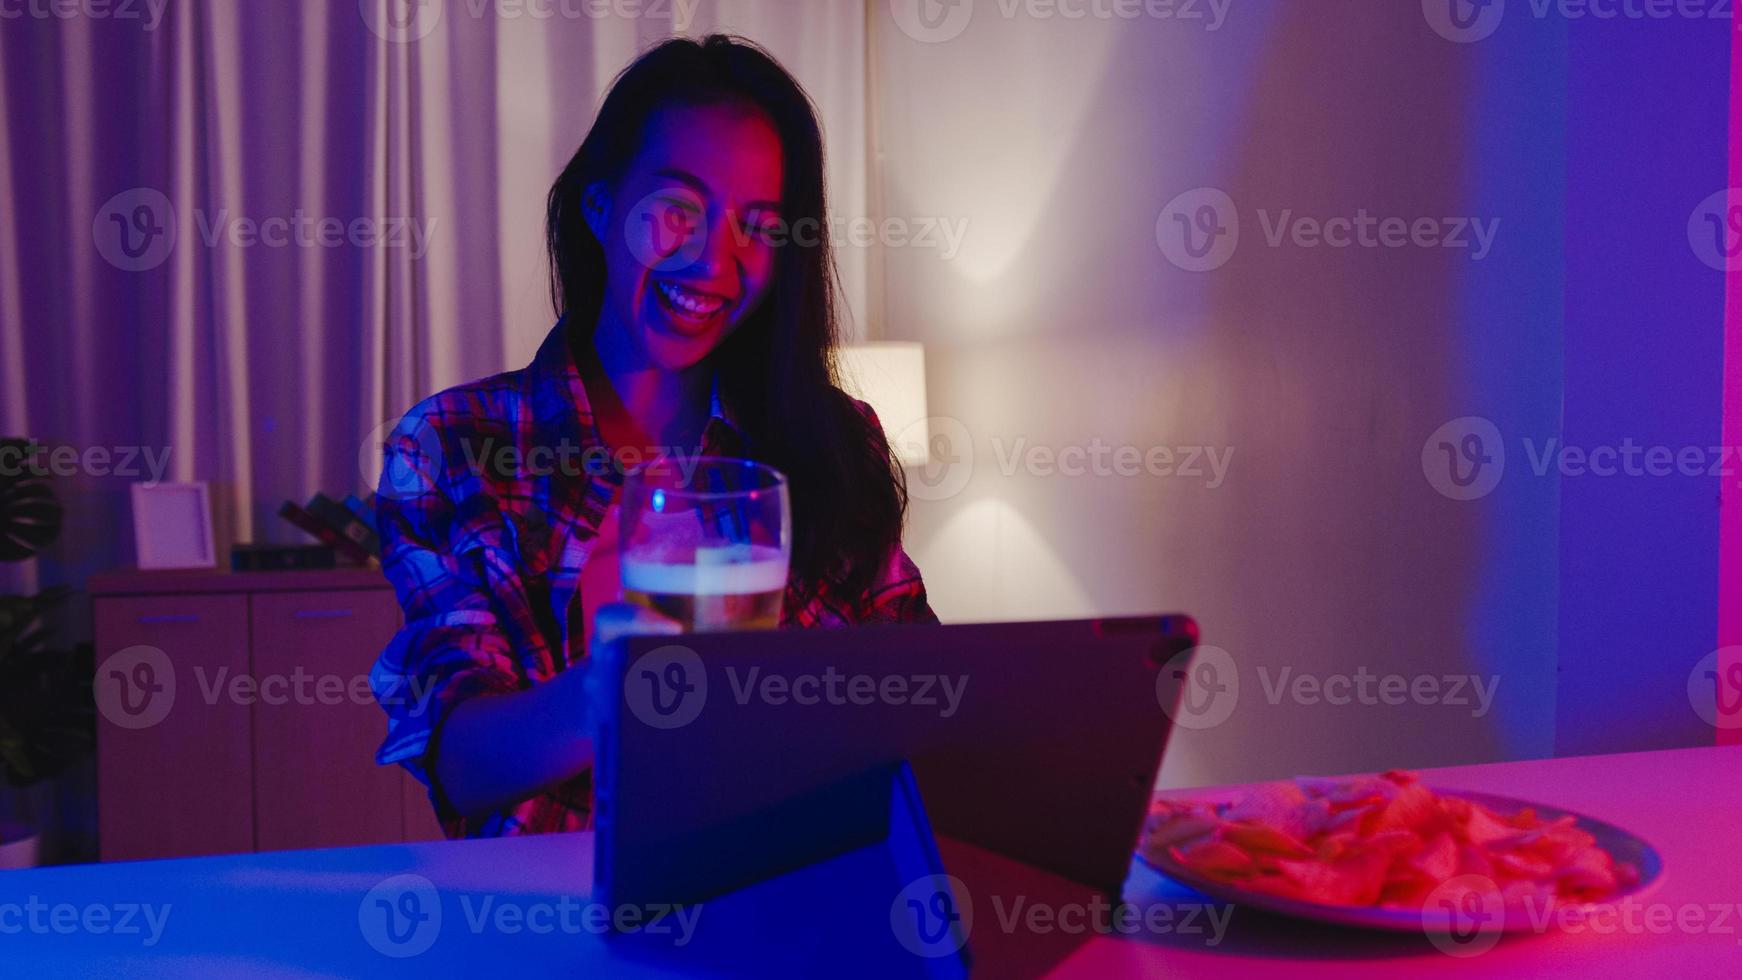 giovane signora asiatica che beve birra divertendosi momento felice discoteca neon night party evento celebrazione online tramite videochiamata nel soggiorno di casa. distanziamento sociale, quarantena per la prevenzione del coronavirus. foto